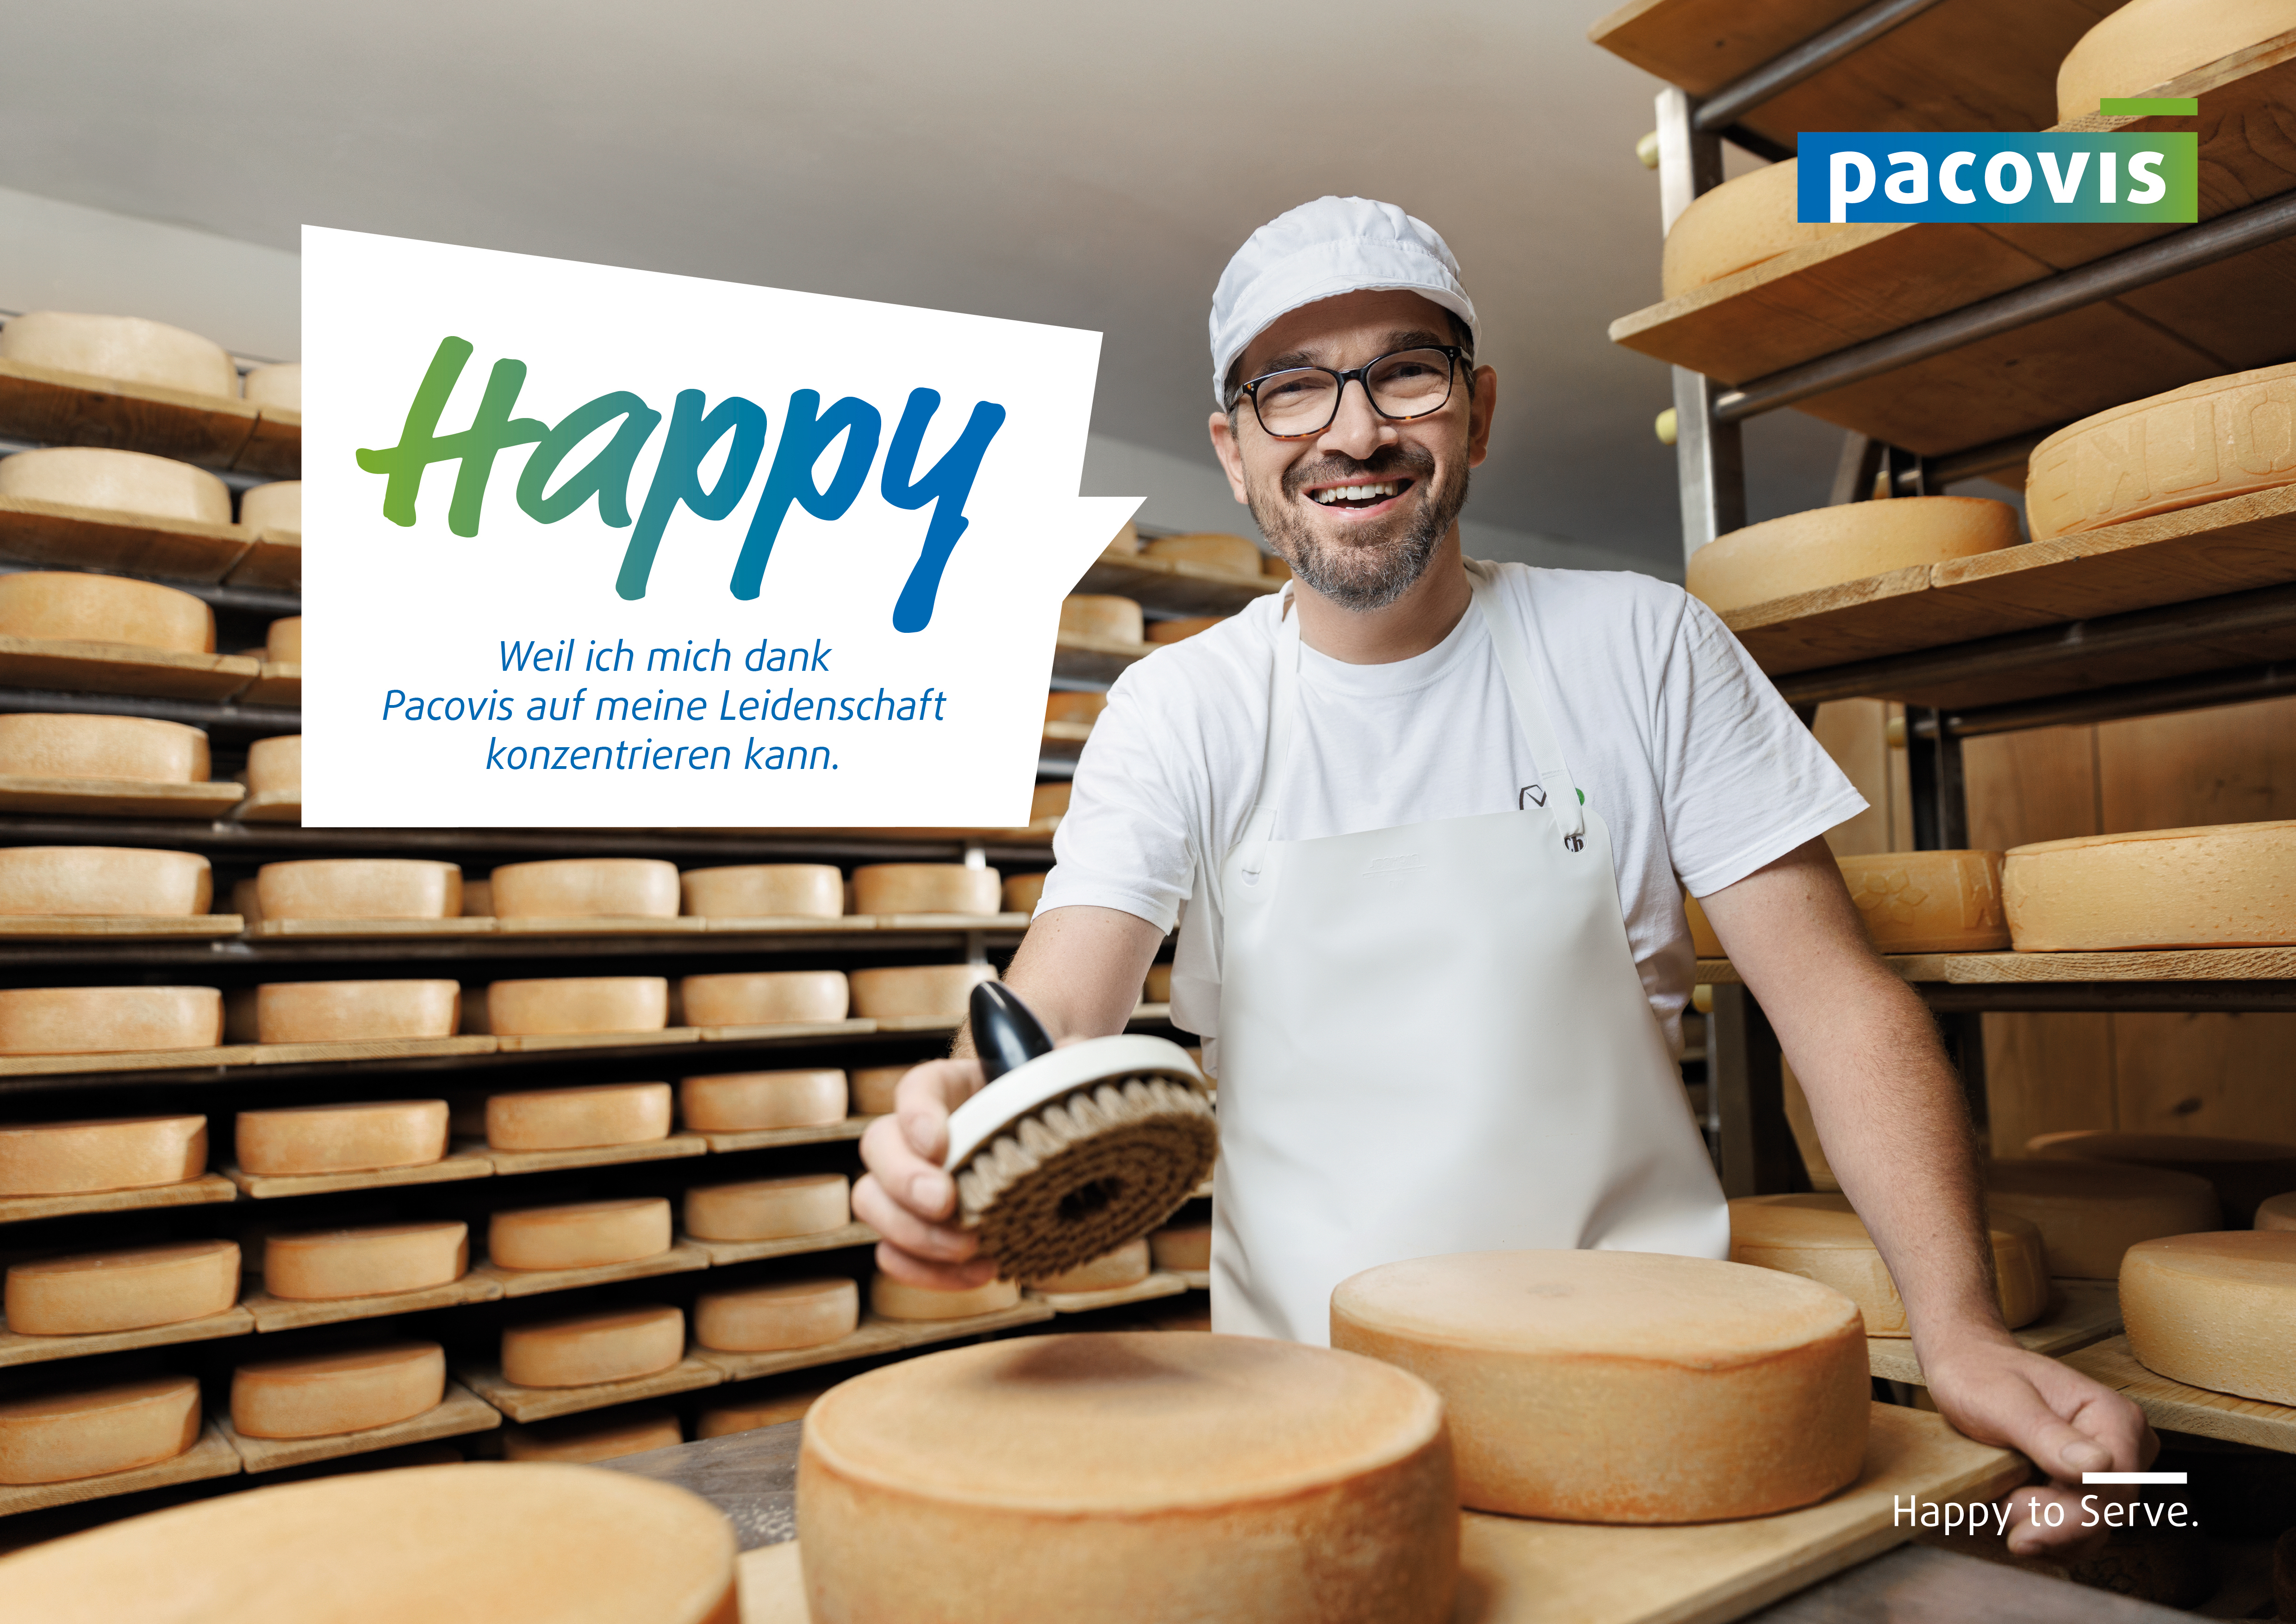 Bild aus der Pacovis-Imagekampagne mit glücklichem Käser und Text "Happy, weil ich mich dank Pacovis auf meine Leidenschaft konzentrieren kann."